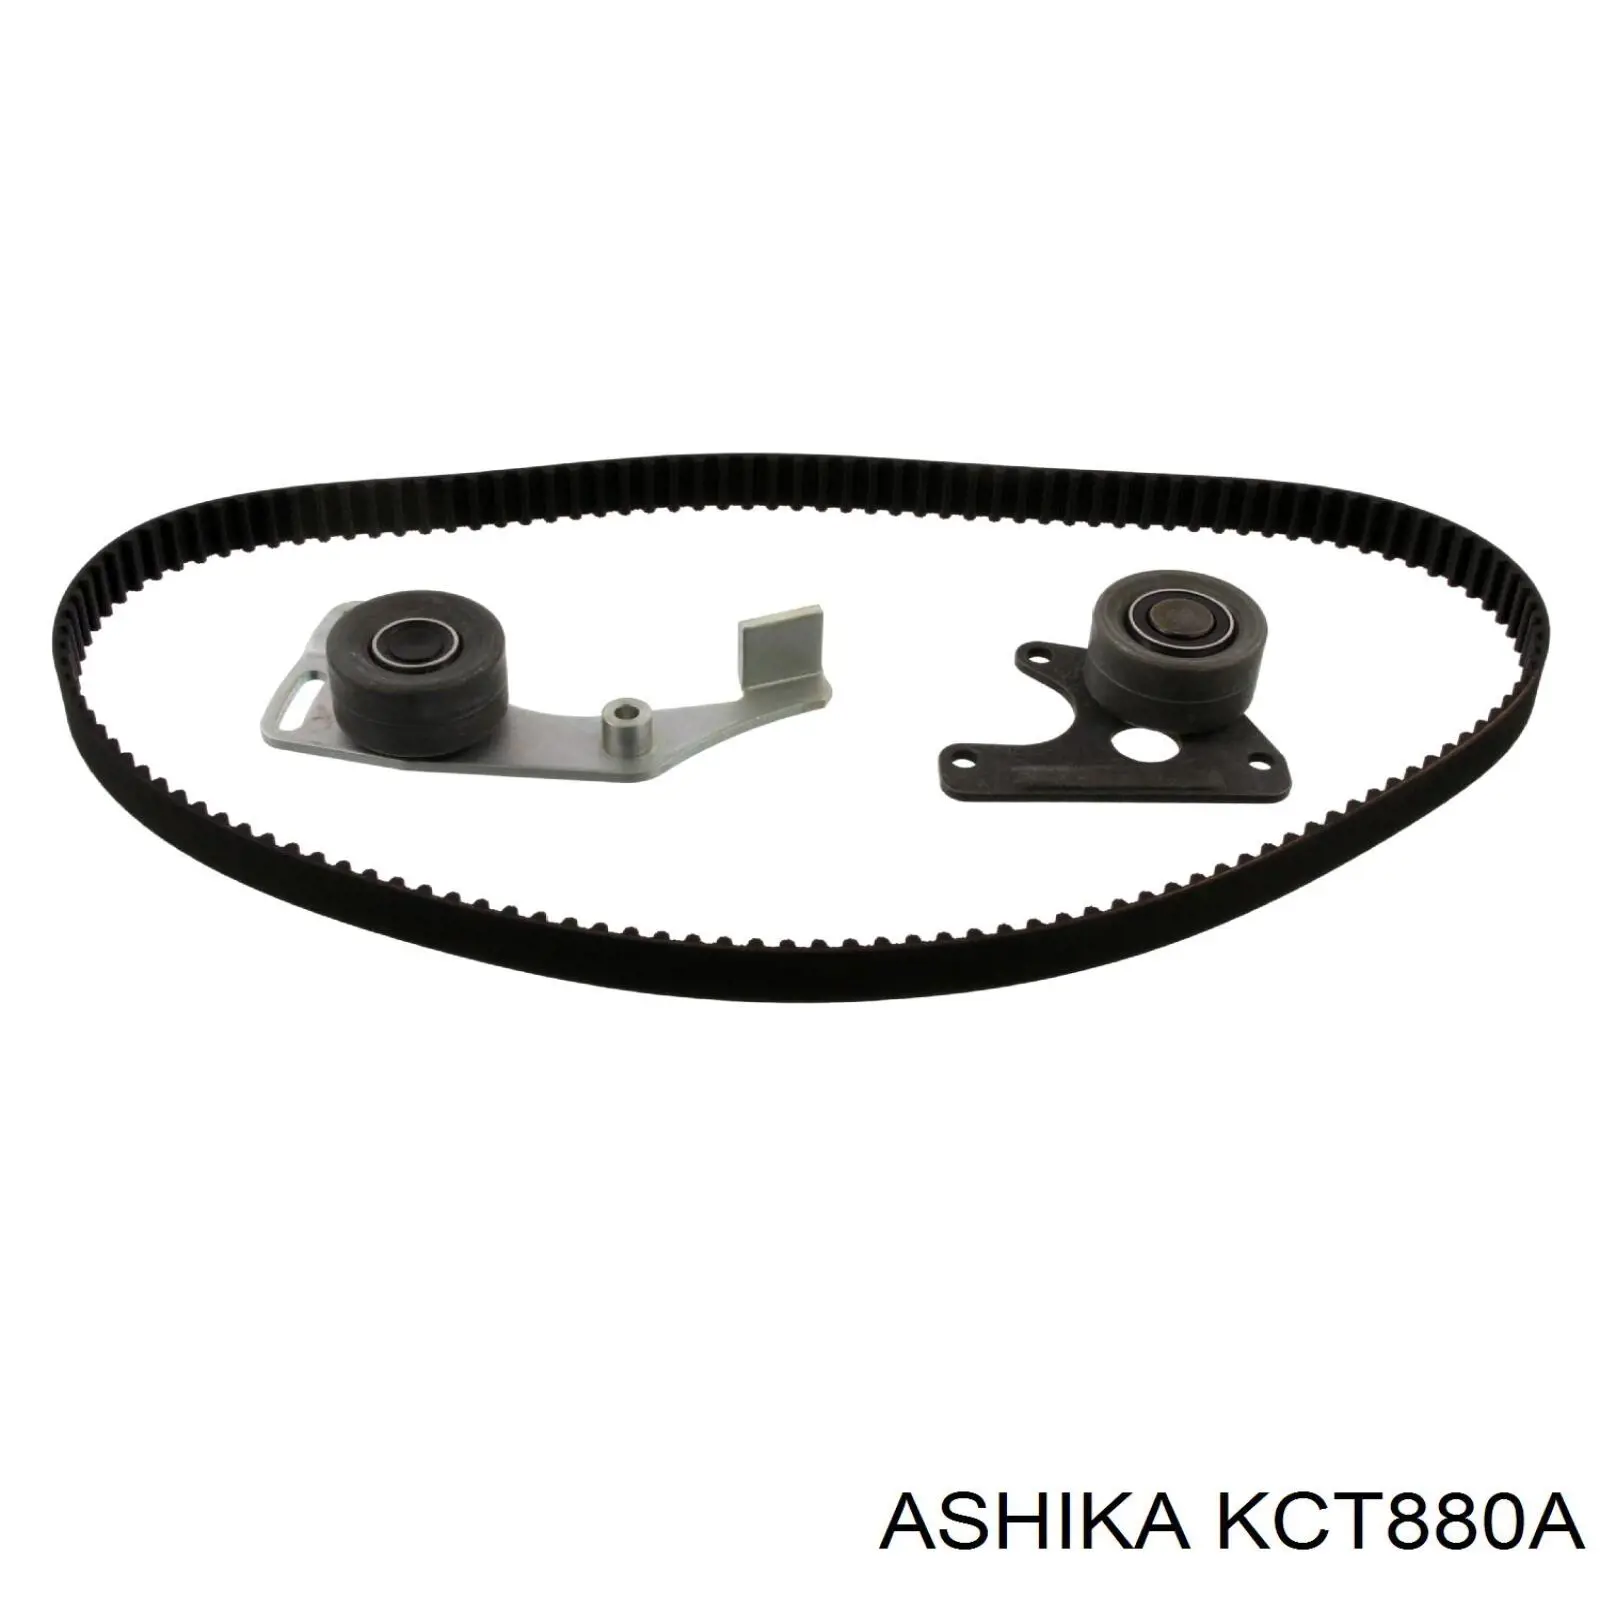 KCT880A Ashika ремень грм